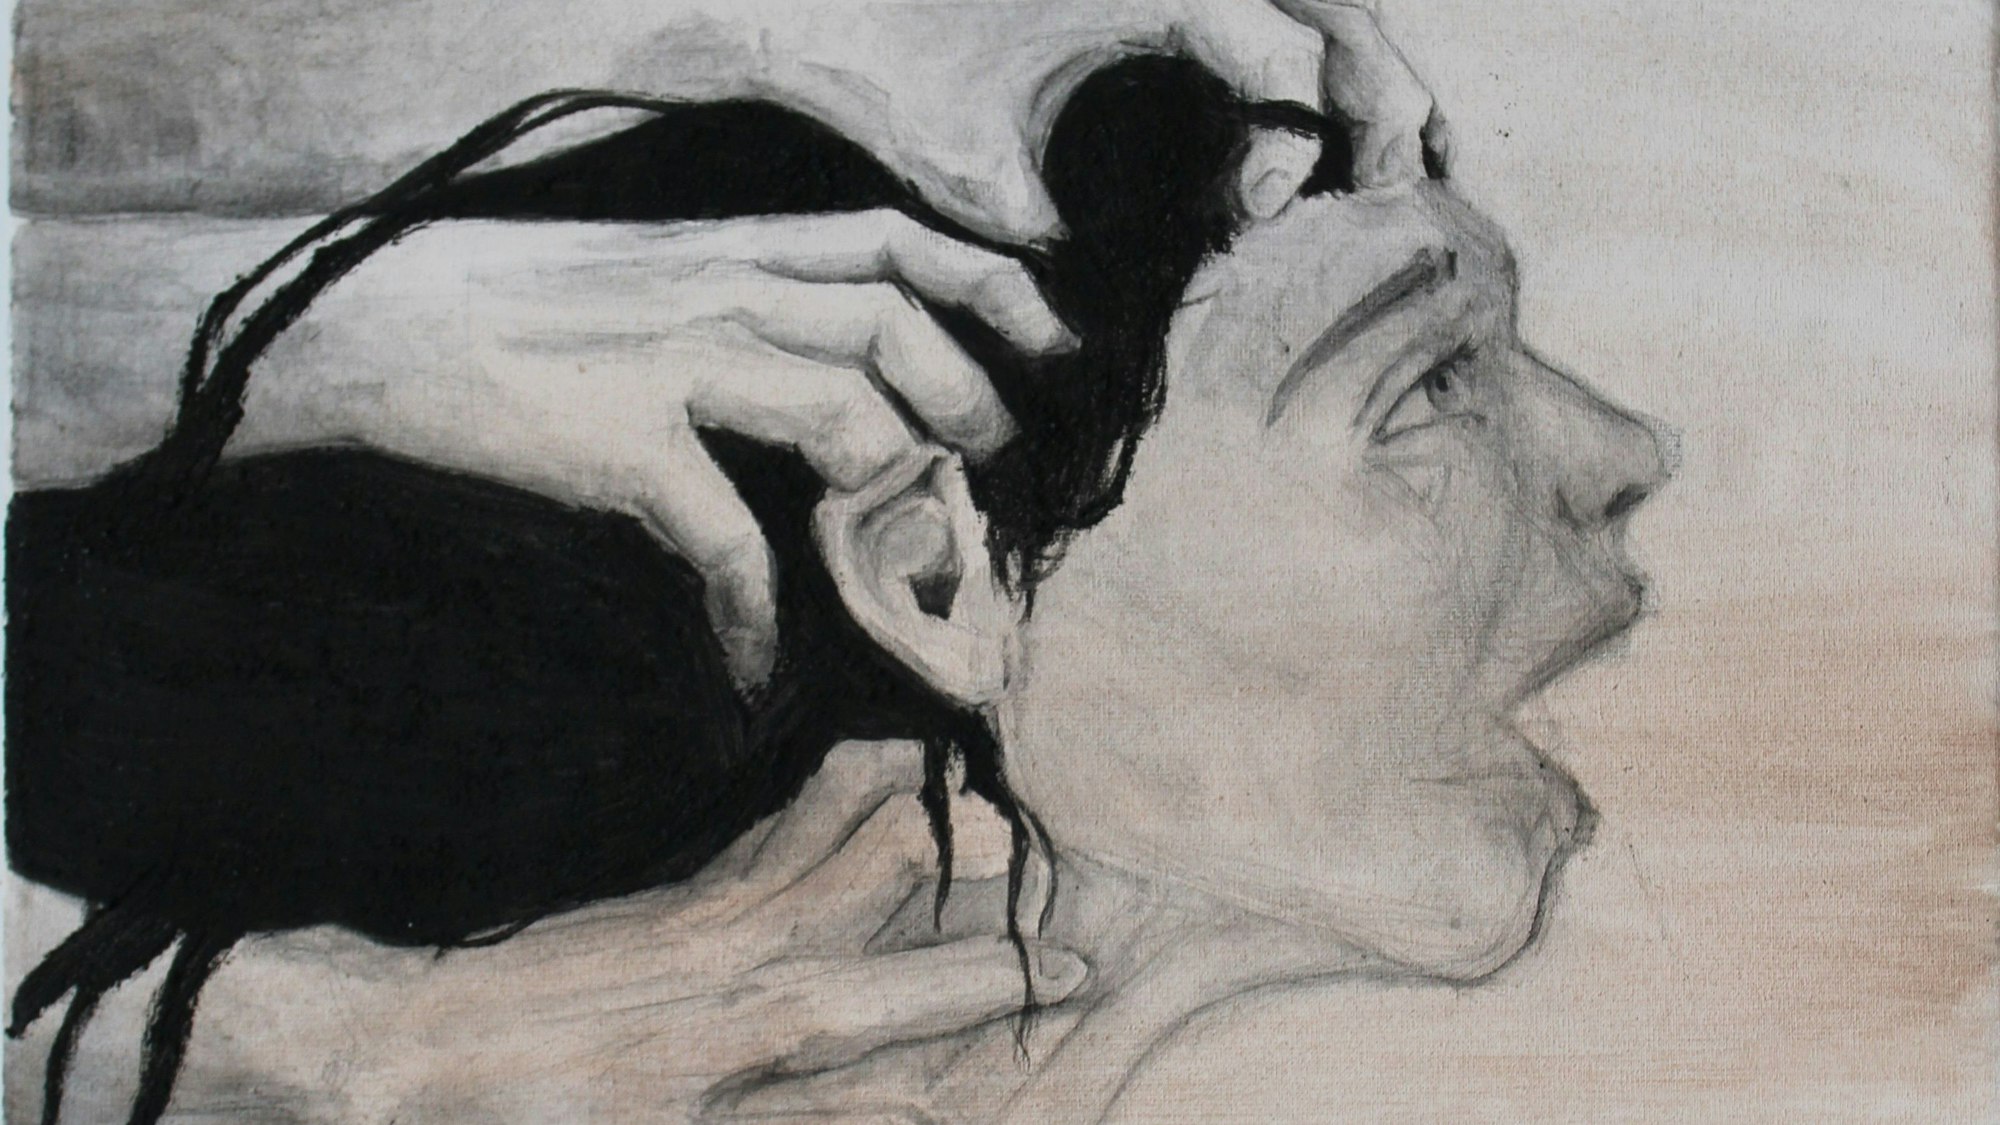 Eine Frau versucht zu schreien, während drei Hände an ihren Hals und in ihre Haare greifen.